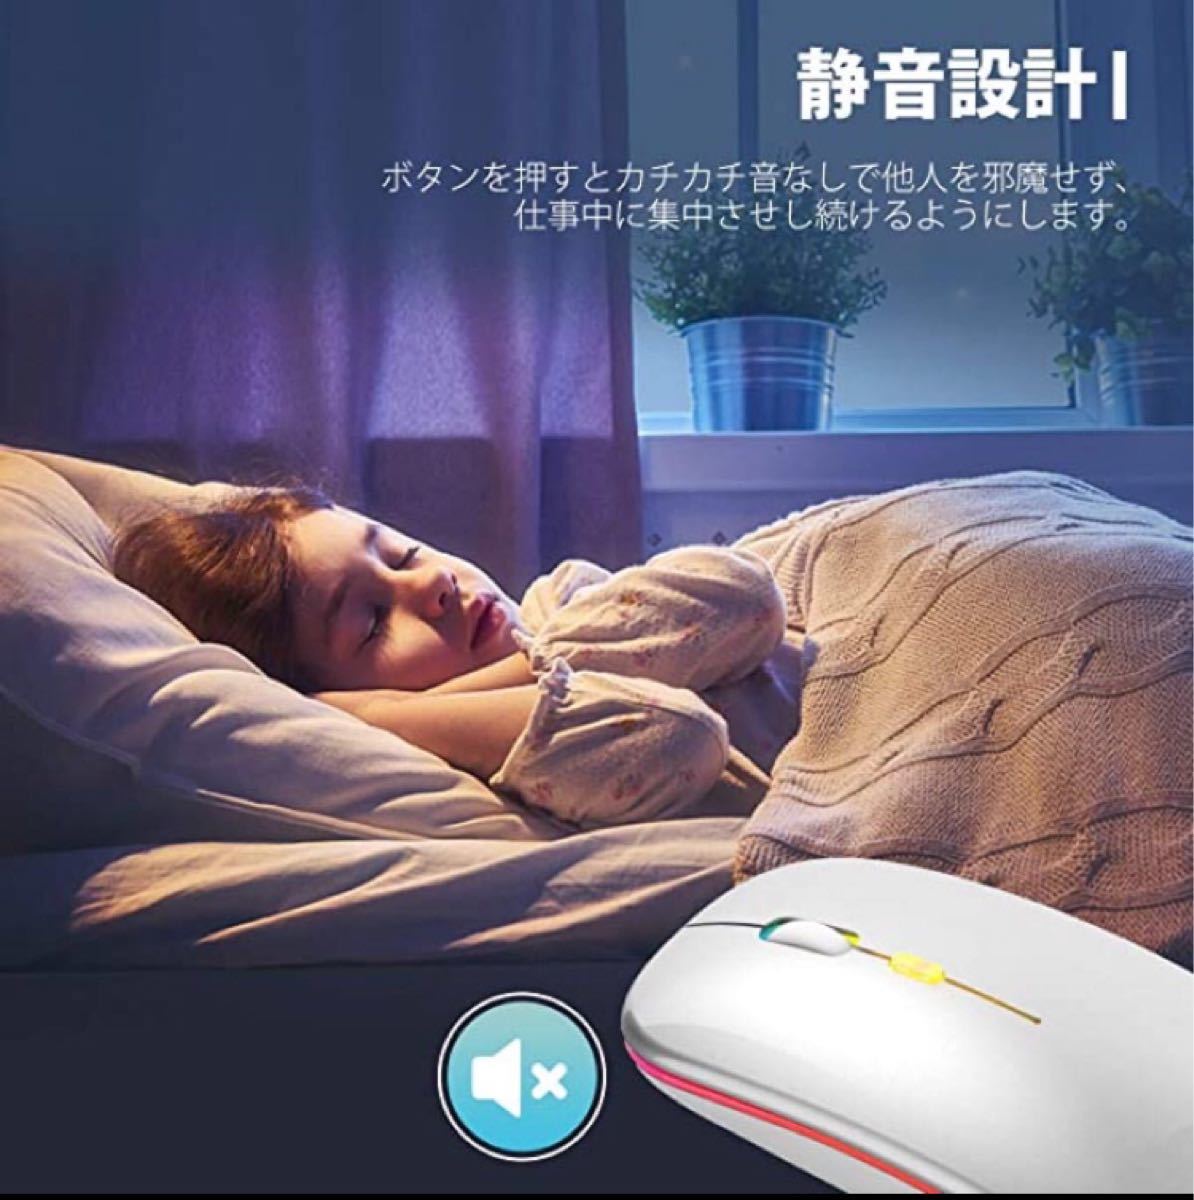 2021【最新版7色LED 】ワイヤレスマウス 静音 軽量 超薄型  無線マウスUSB IOS/MacBook/Microsoft